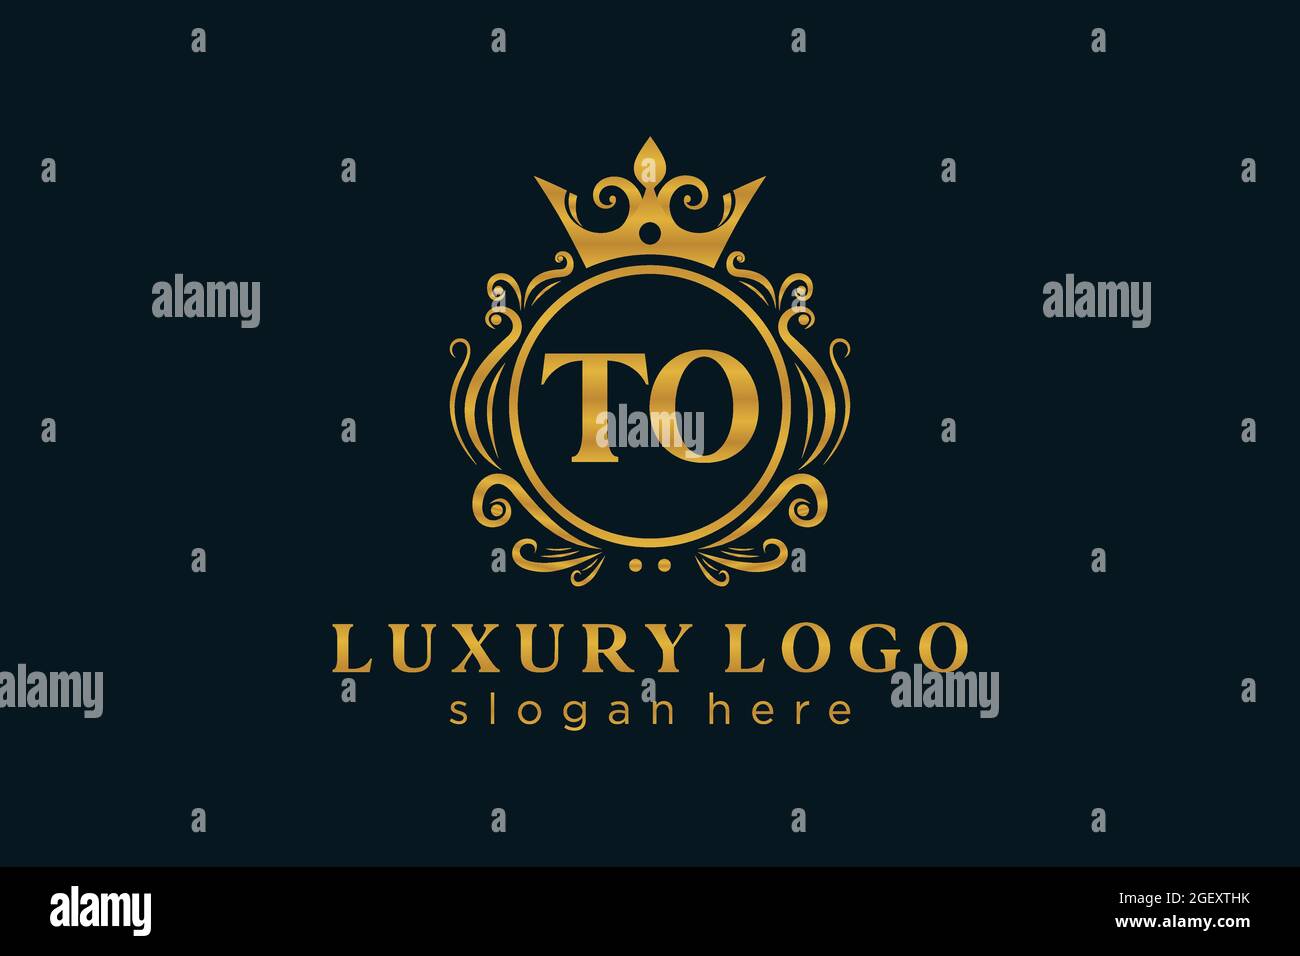 TO Letter Royal Luxury Logo Vorlage in Vektorgrafik für Restaurant, Royalty, Boutique, Cafe, Hotel, Heraldisch, Schmuck, Mode und andere Vektor illustrr Stock Vektor